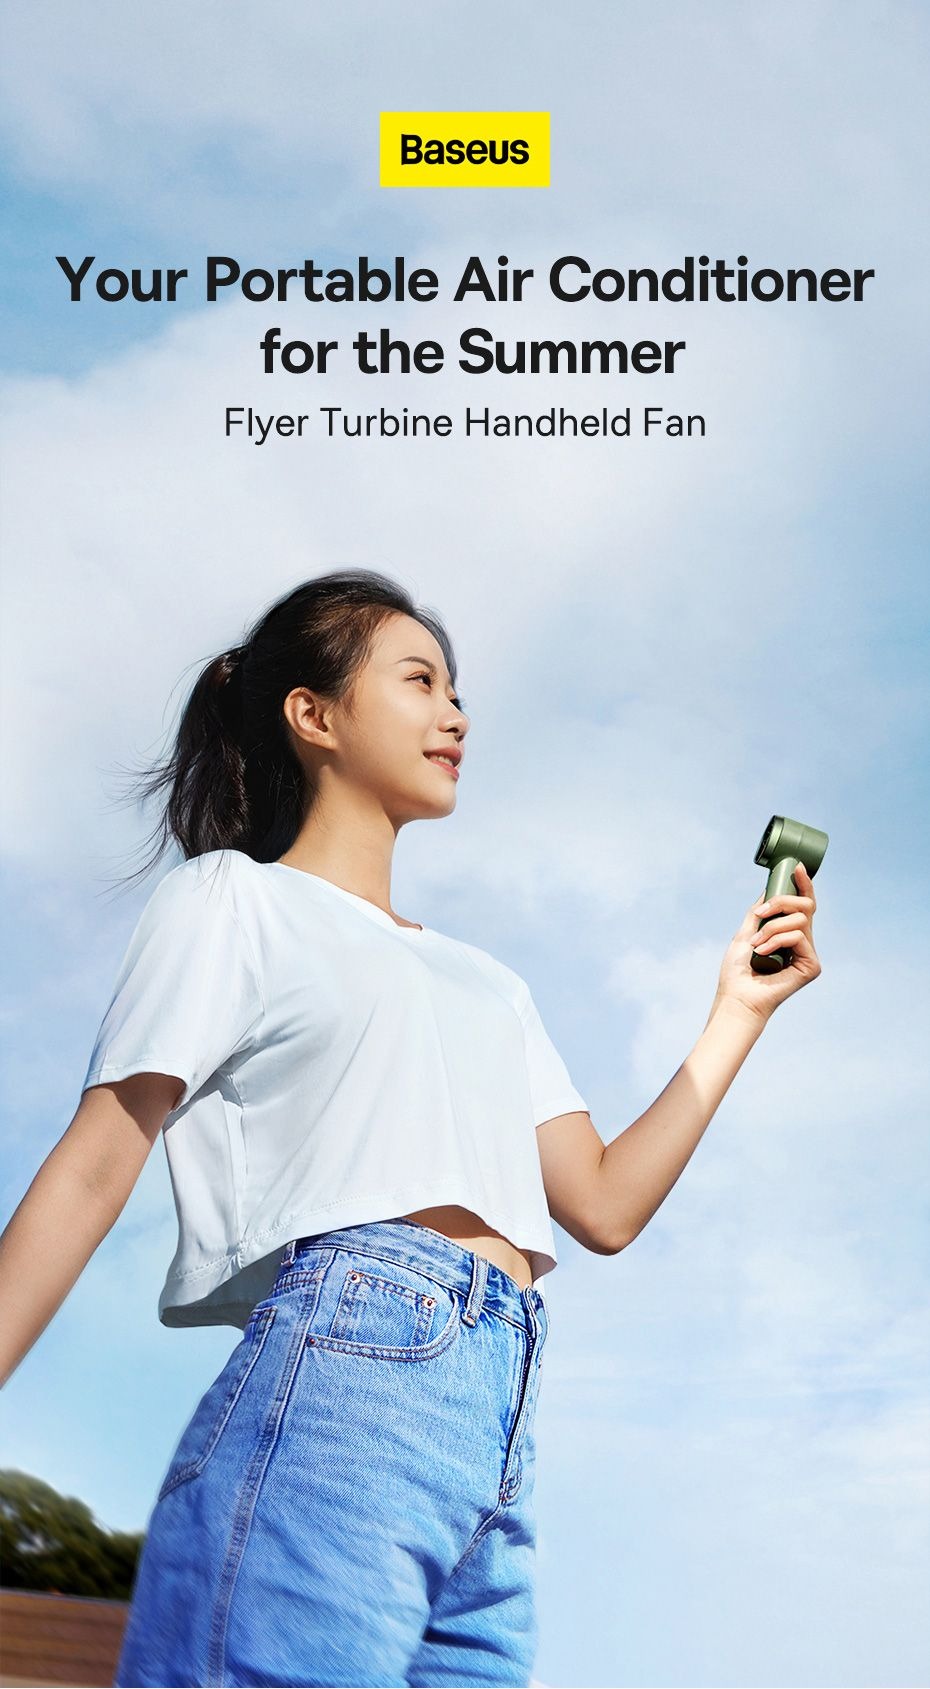 Baseus Flyer Turbine Handheld Fan